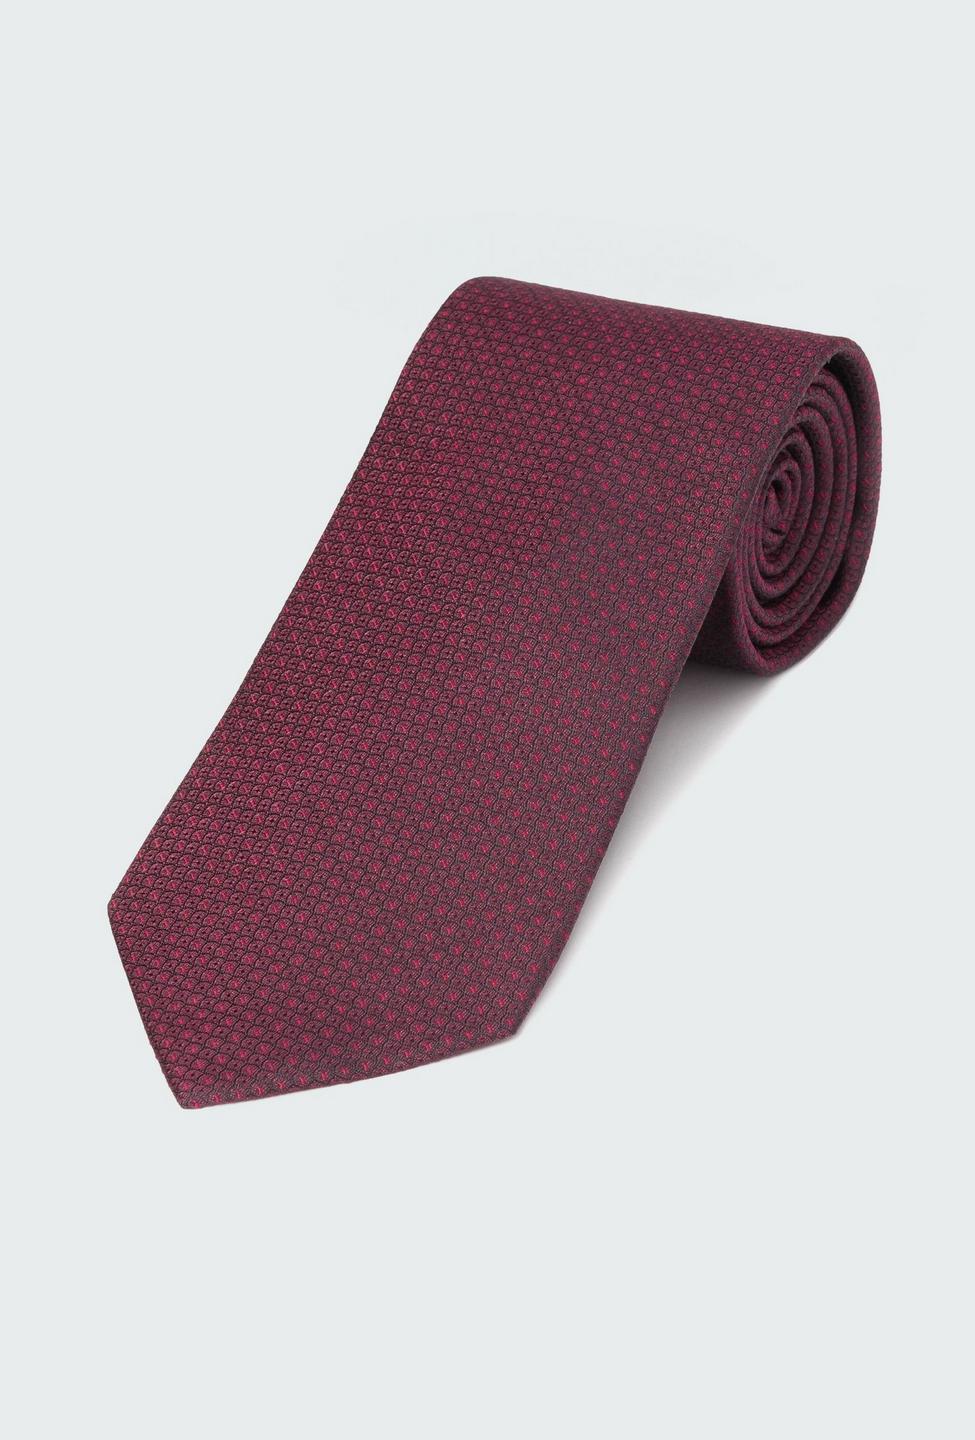 Burgundy tie - Pattern Design from Premium Indochino Collection